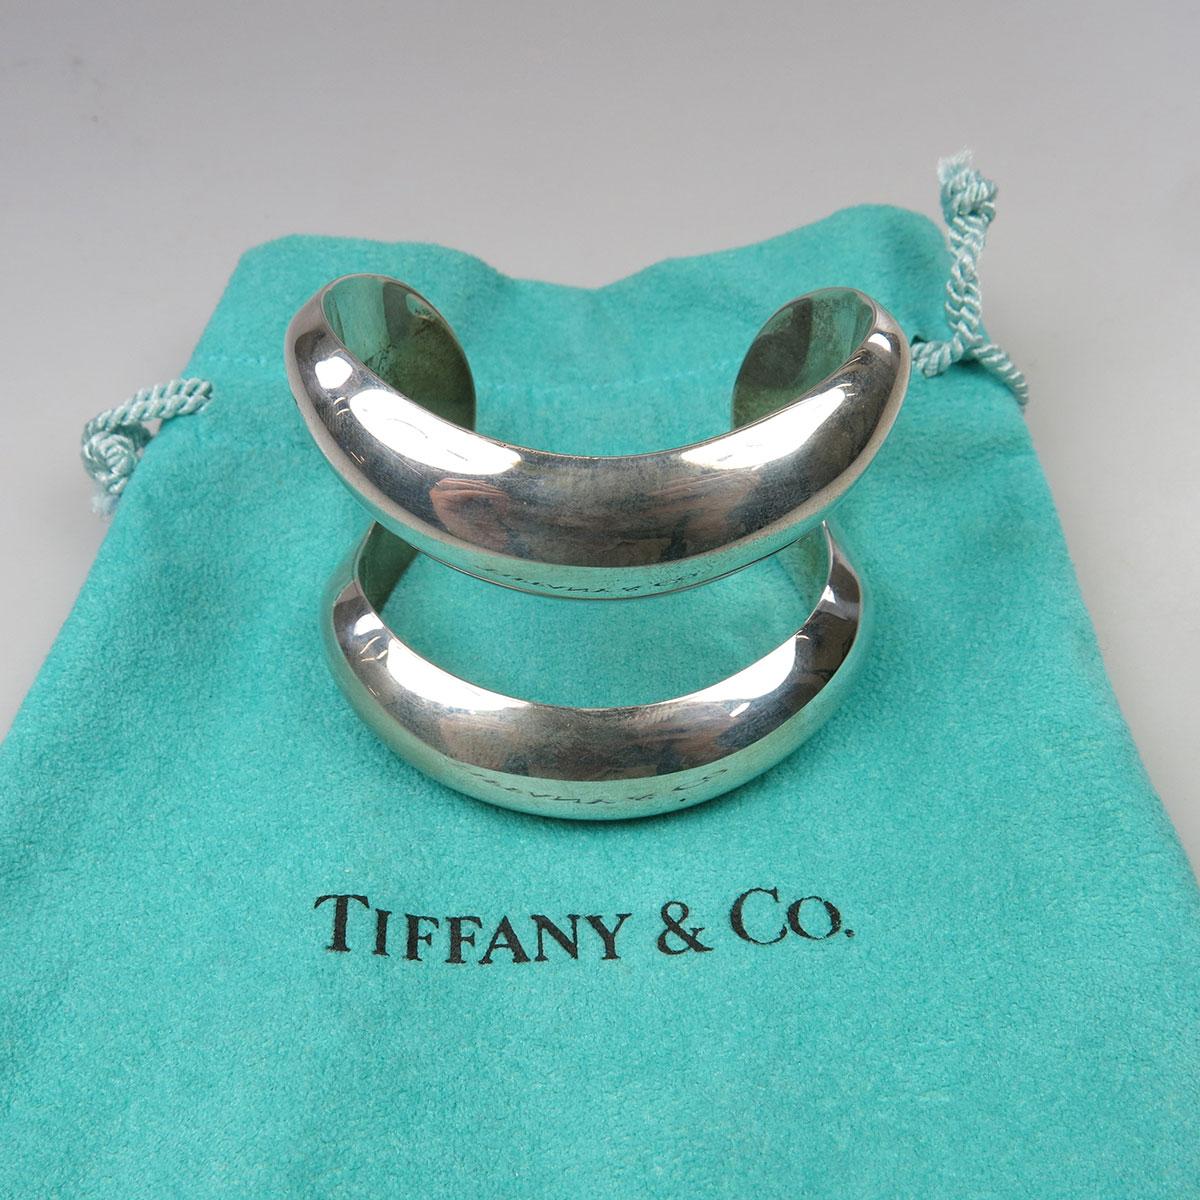 Tiffany & Co. Elsa Peretti Italian Sterling Silver Open Cuff Bangle